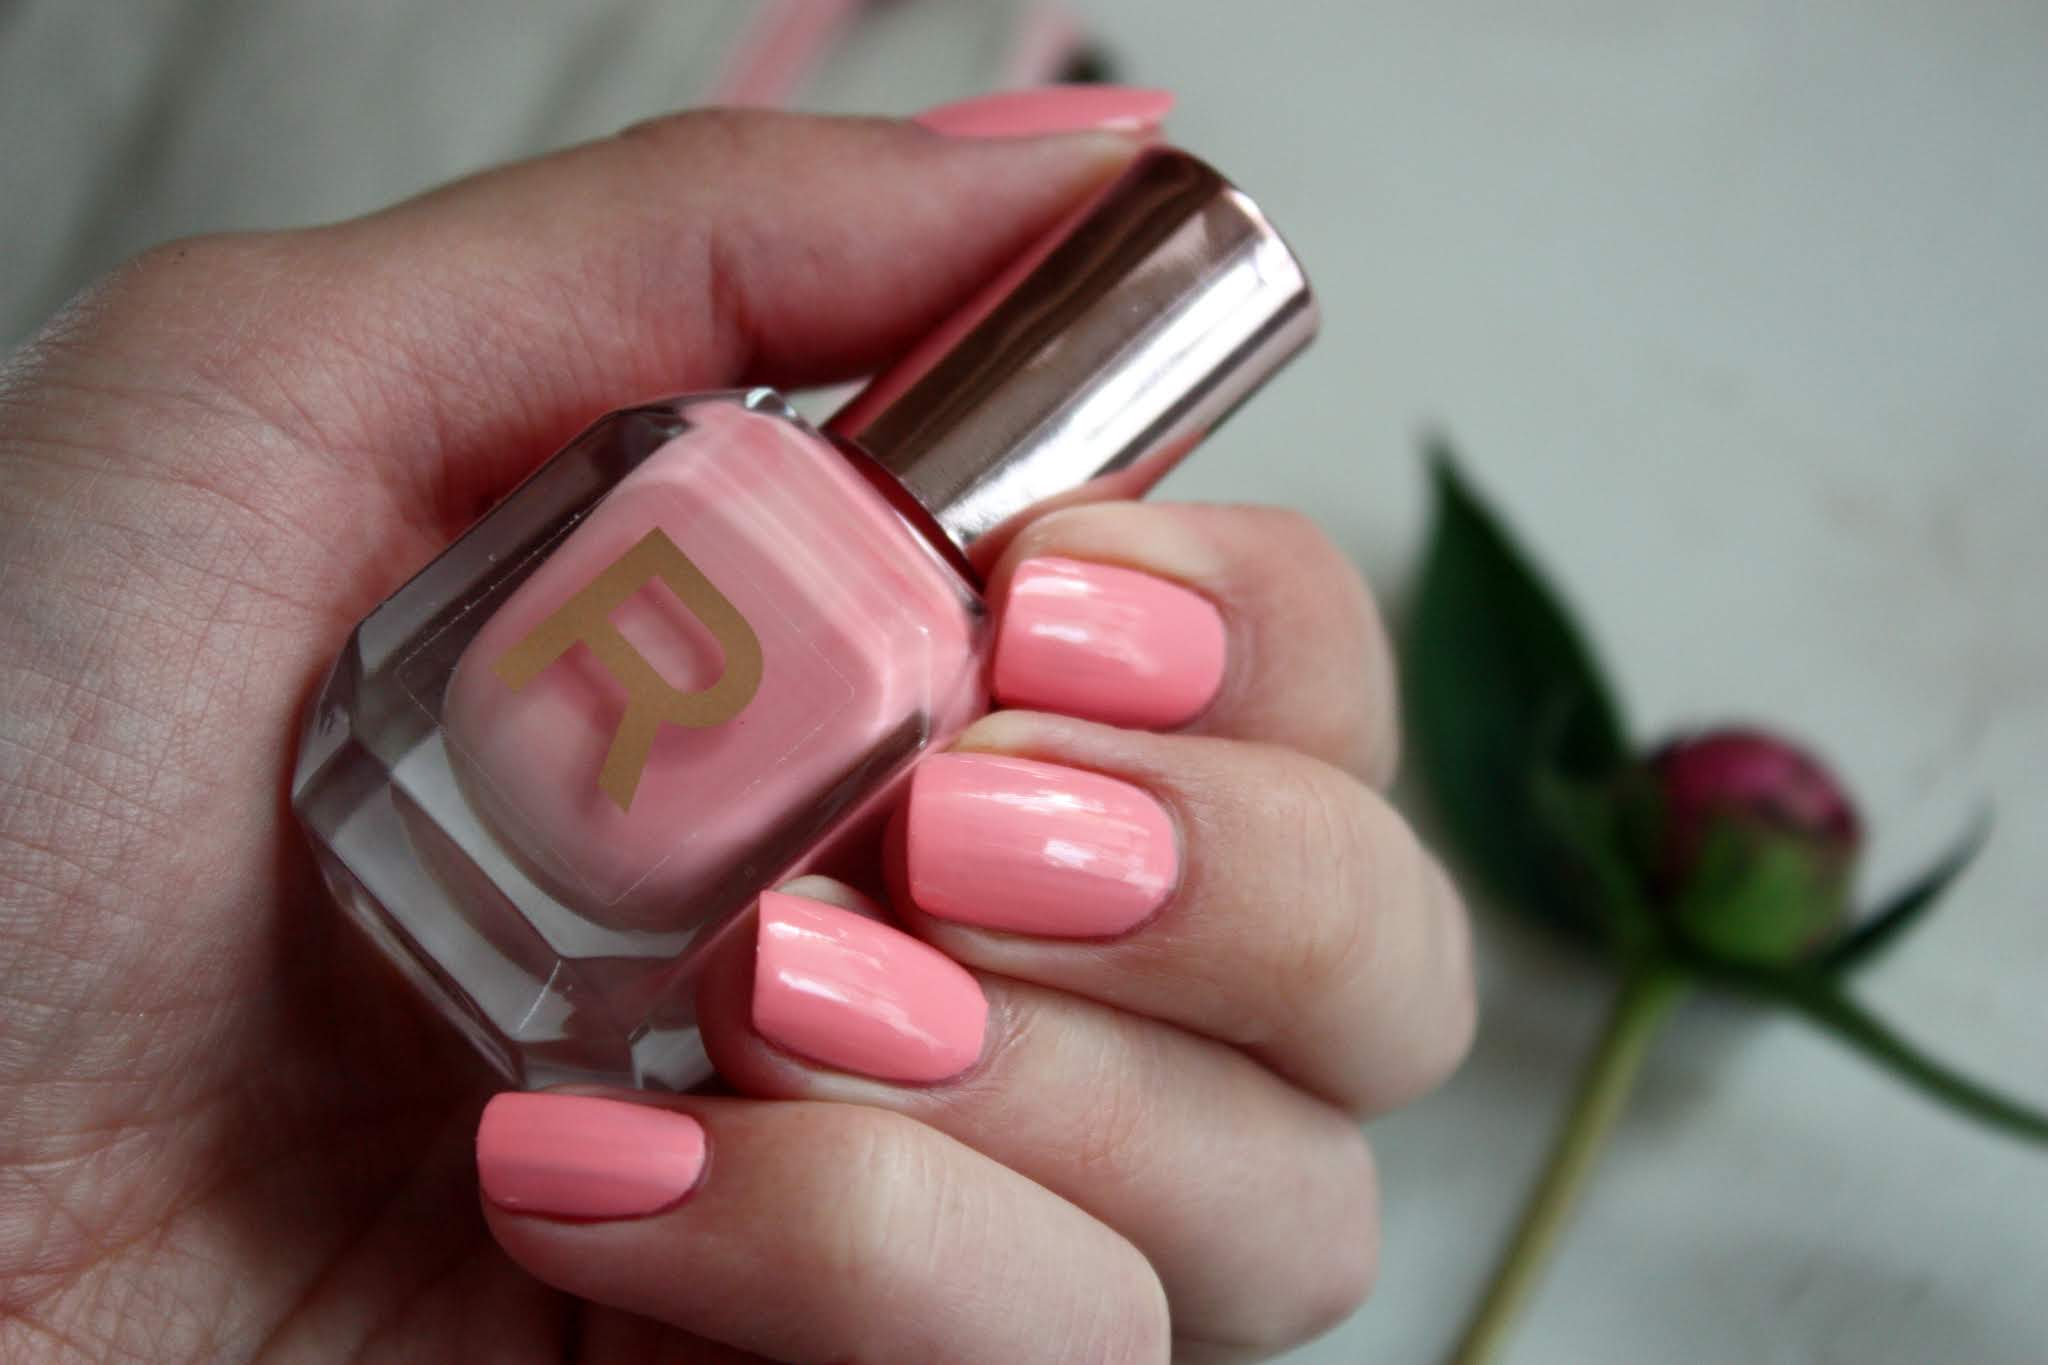 High gloss nail polish